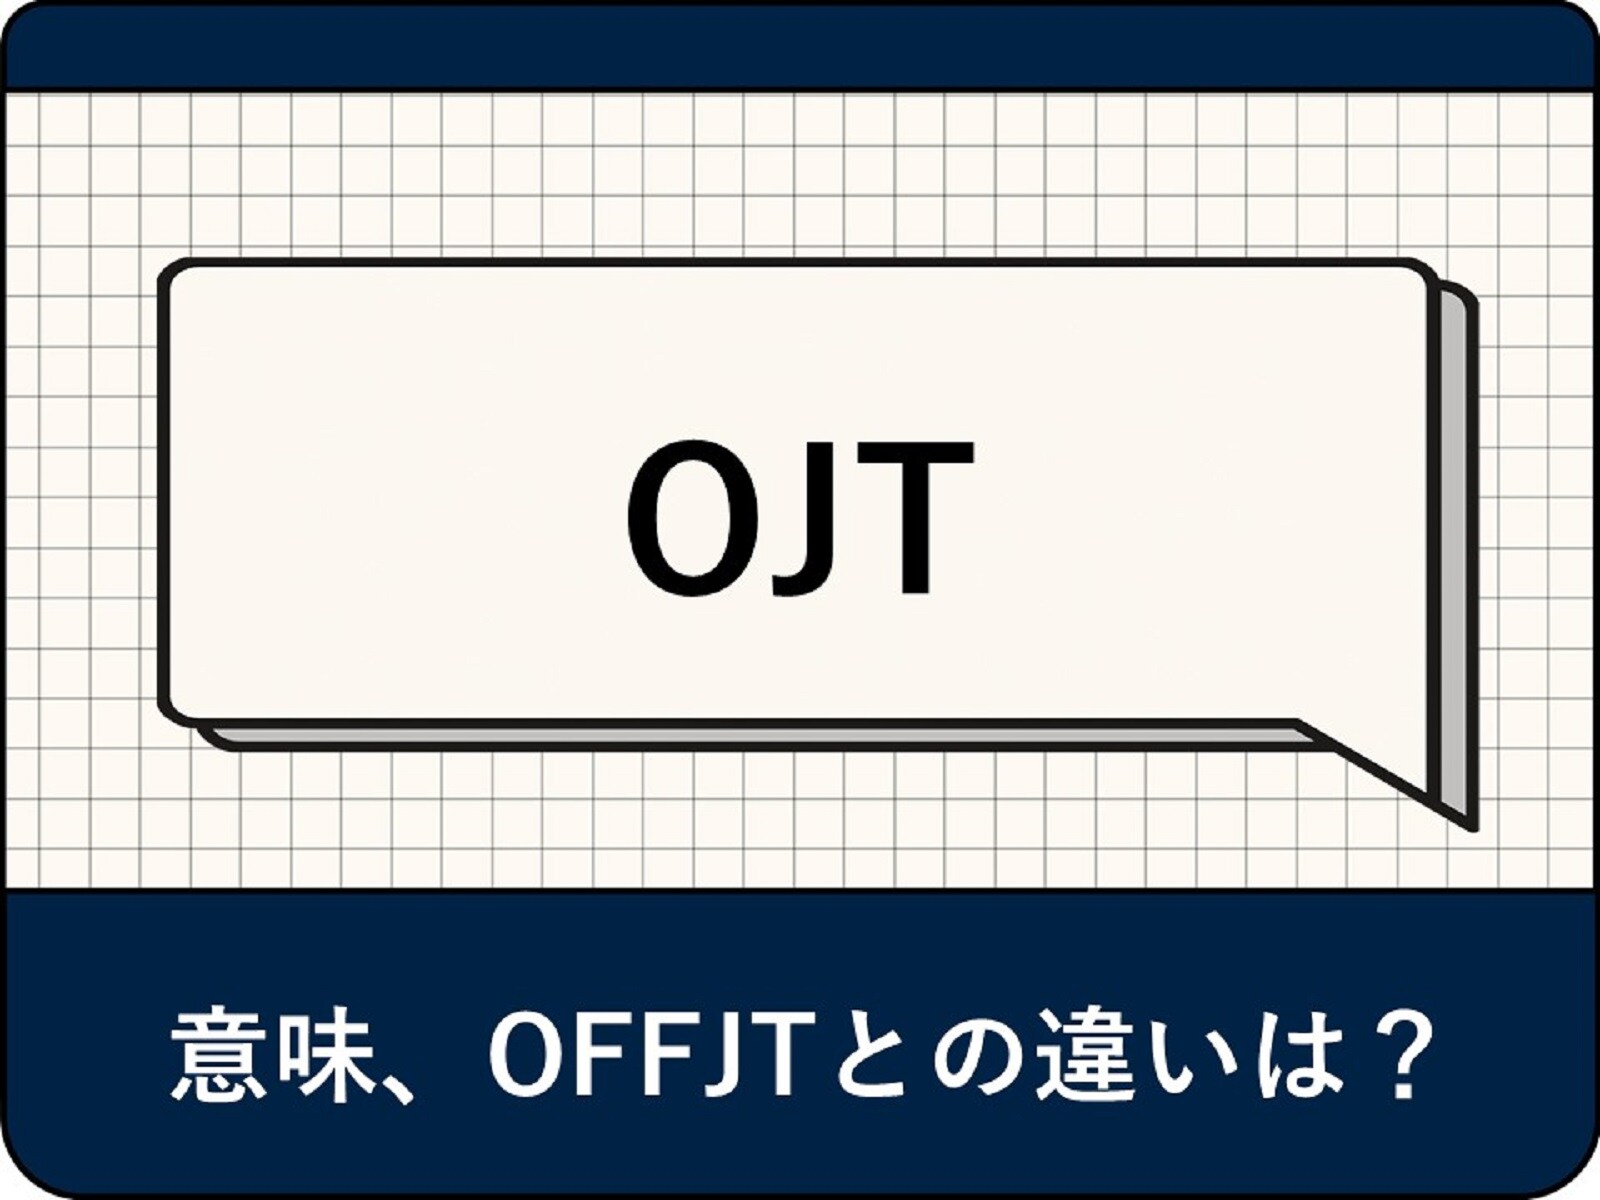 OJTの意味とは？ 目的やメリット・デメリット、OFFJTとの違いを解説